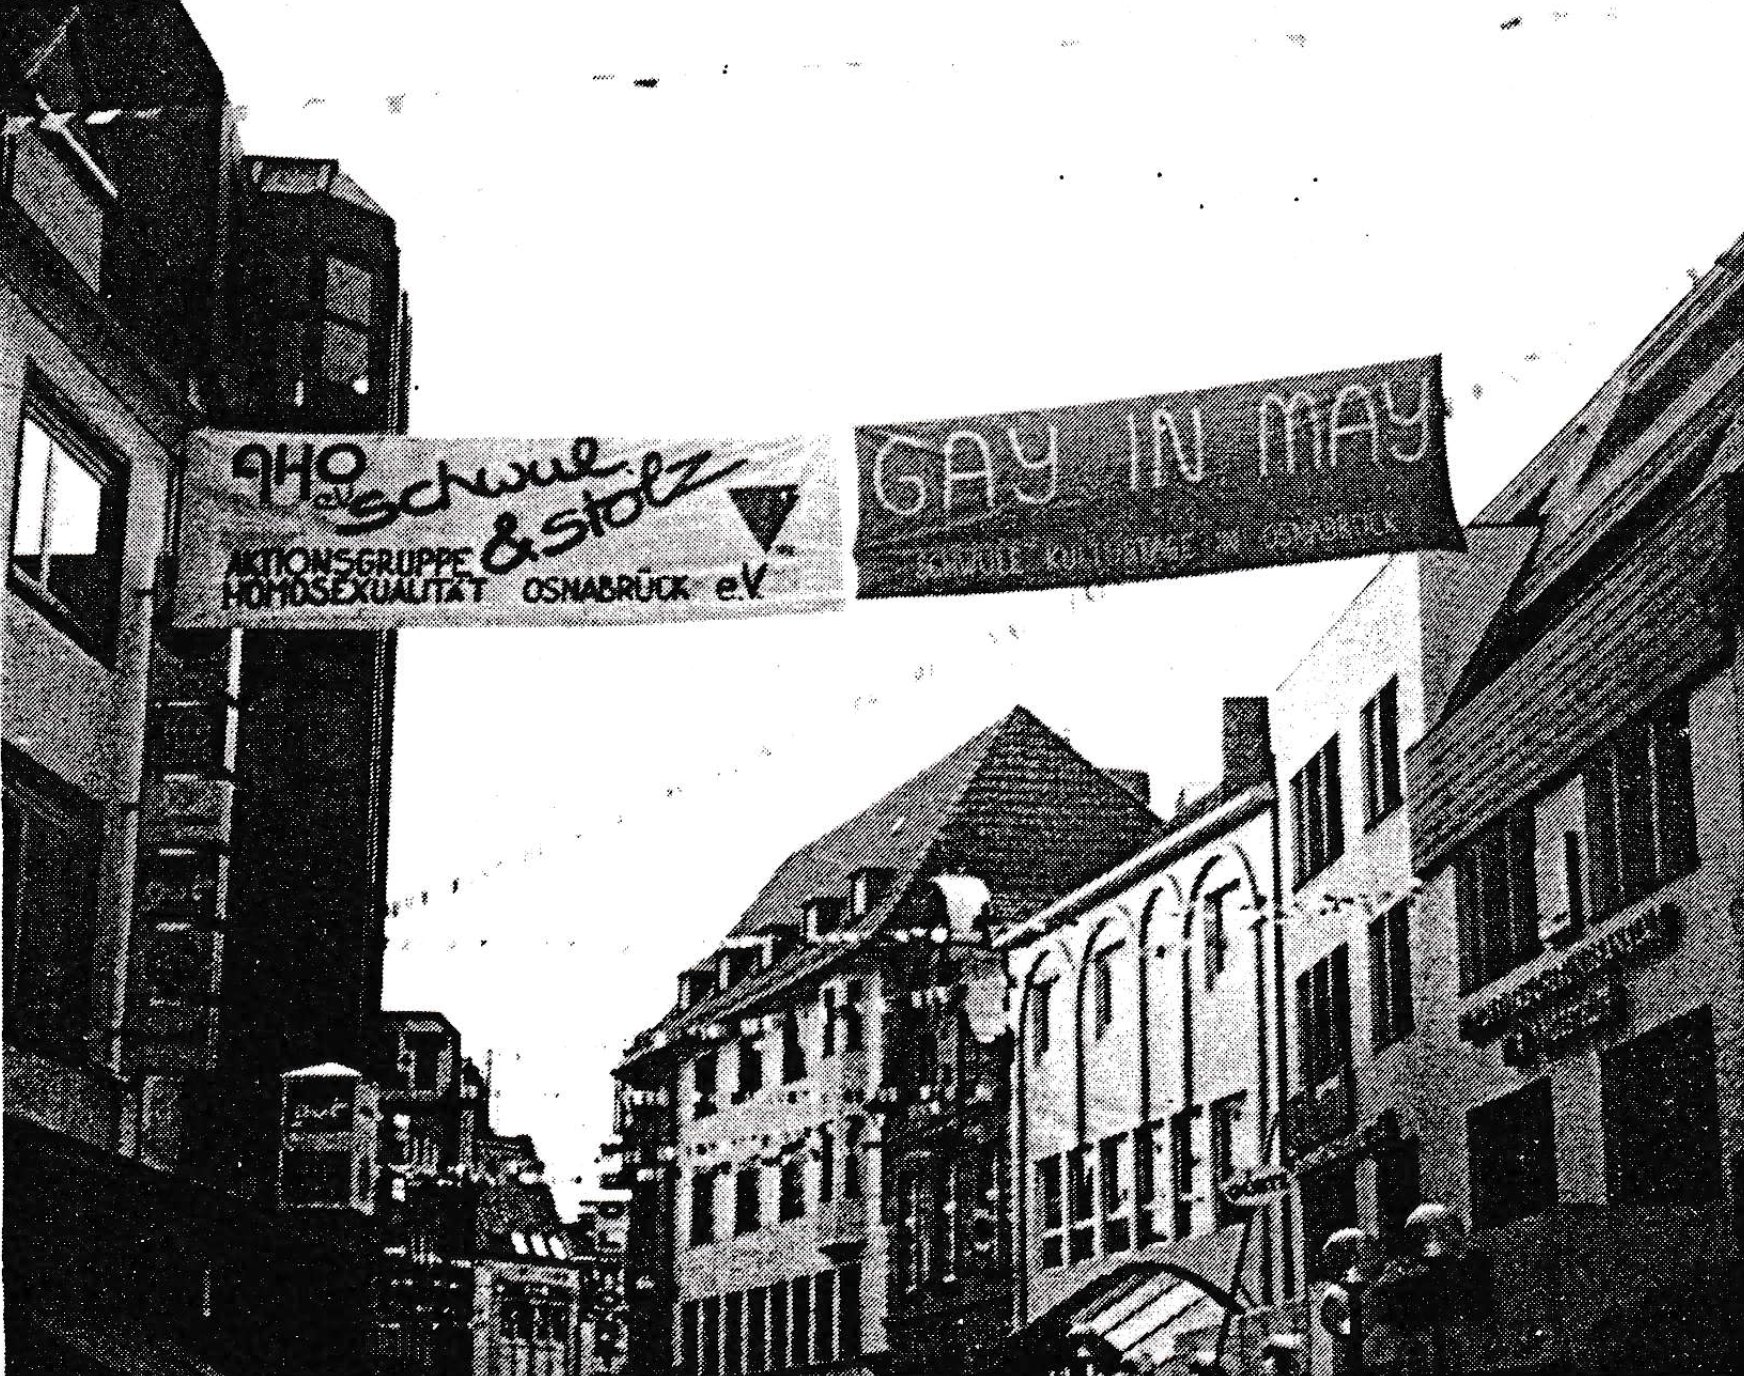 GayinMay1991